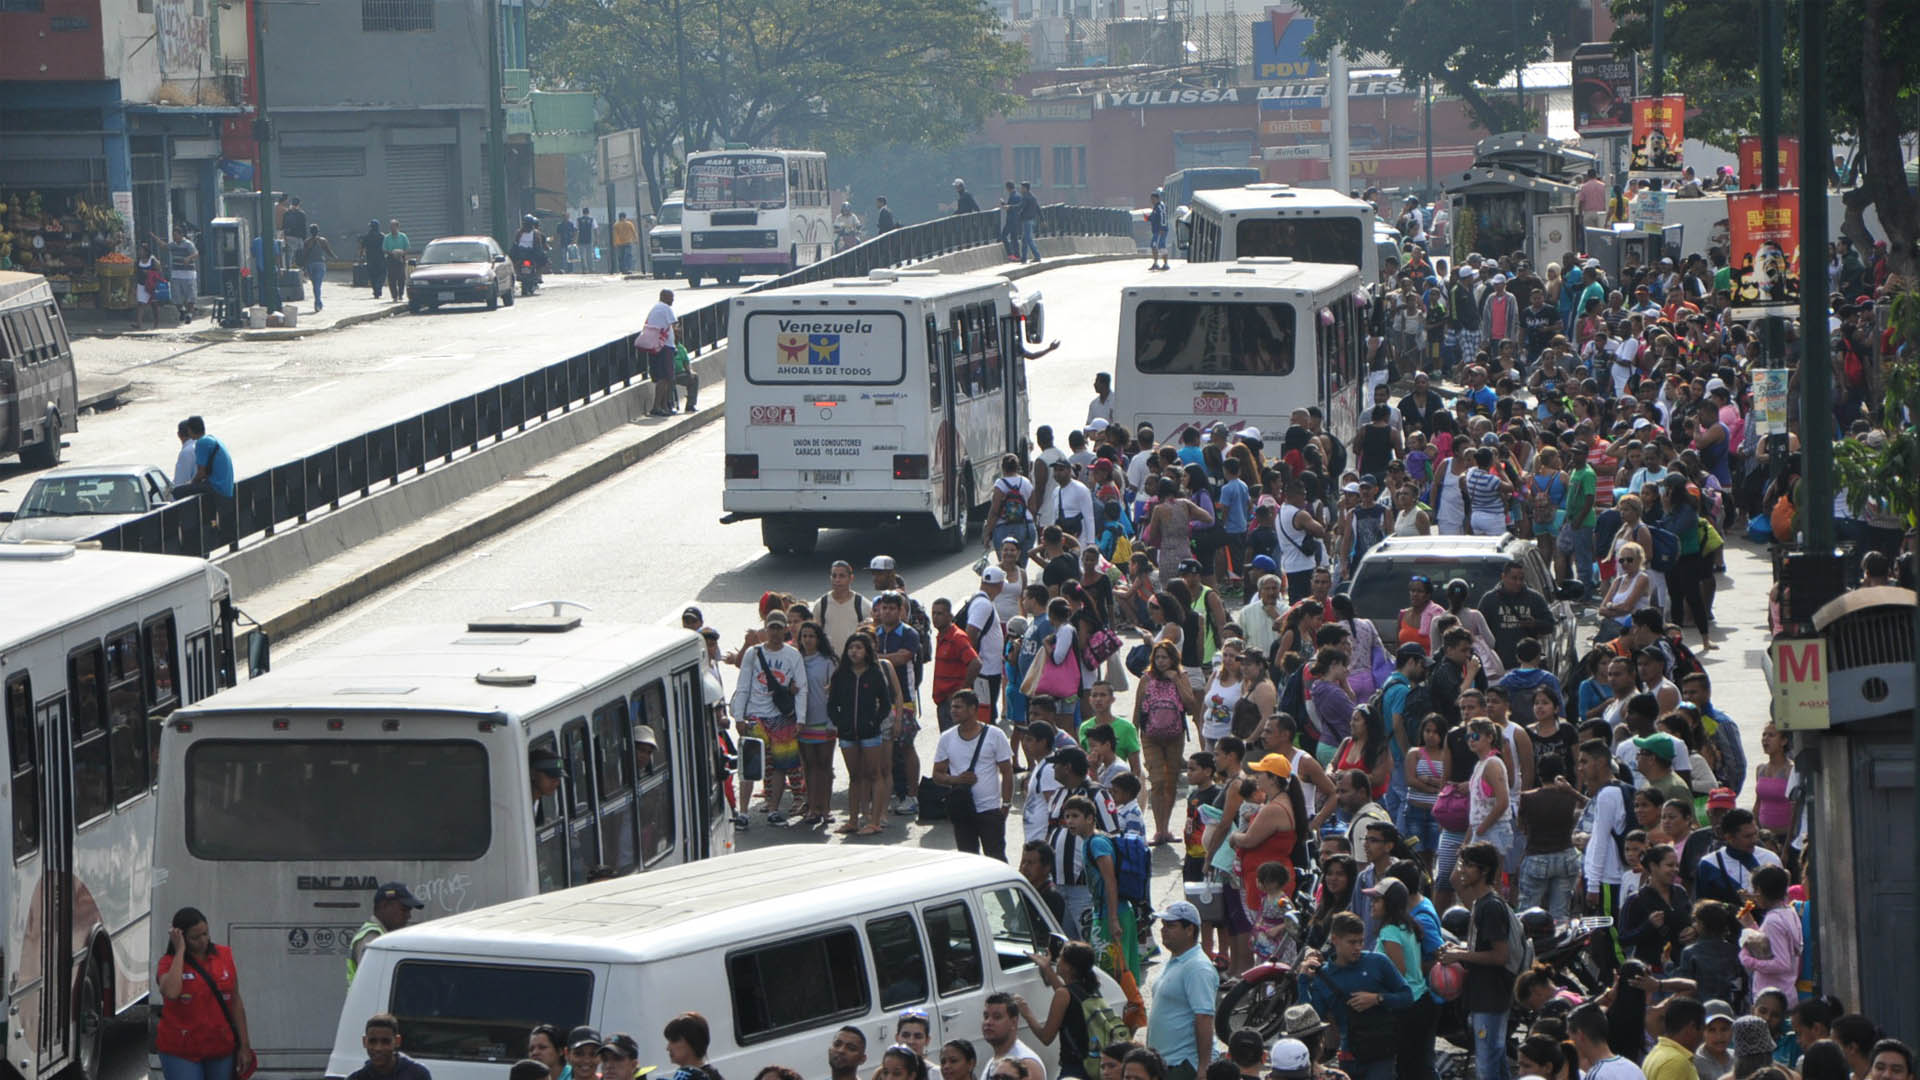 Desde tempranas horas de la mañana, a través de Twitter, las personas están manifestando que en Caracas el transporte está limitado